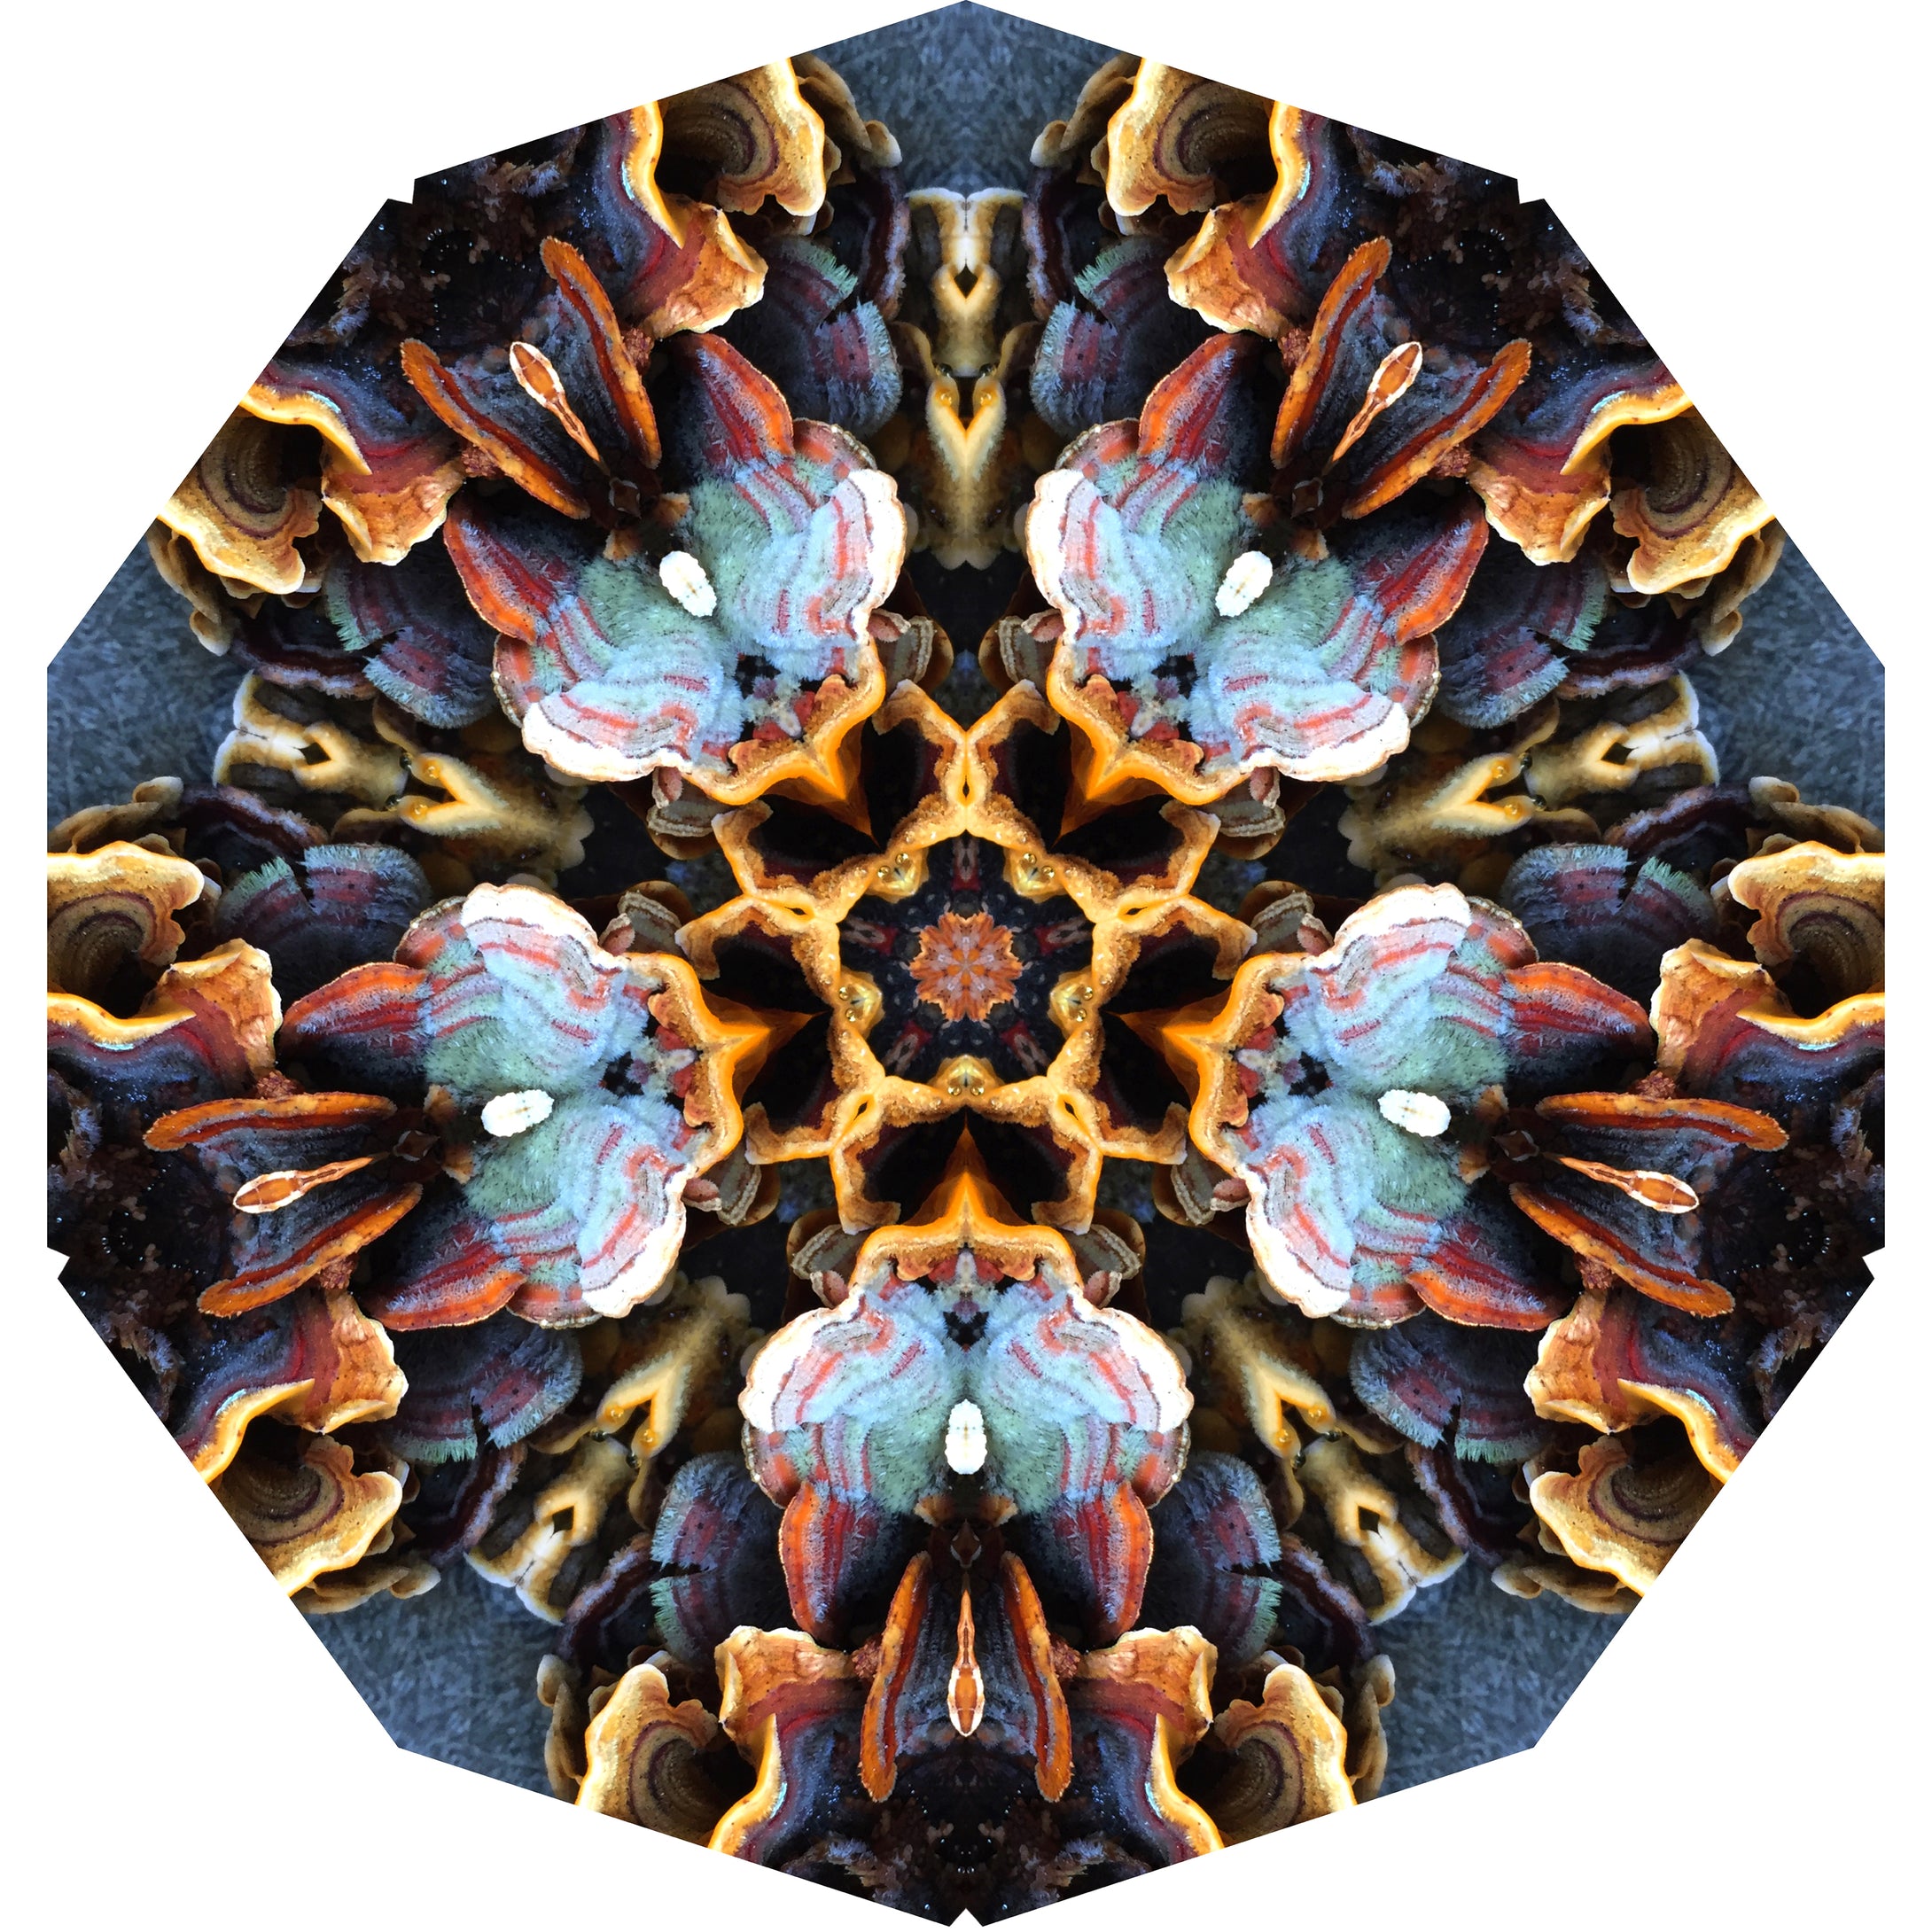 One Nest : Earthworks: Pairing 7: Elizabeth Addison: Mandala 011220, Intelligent Structures